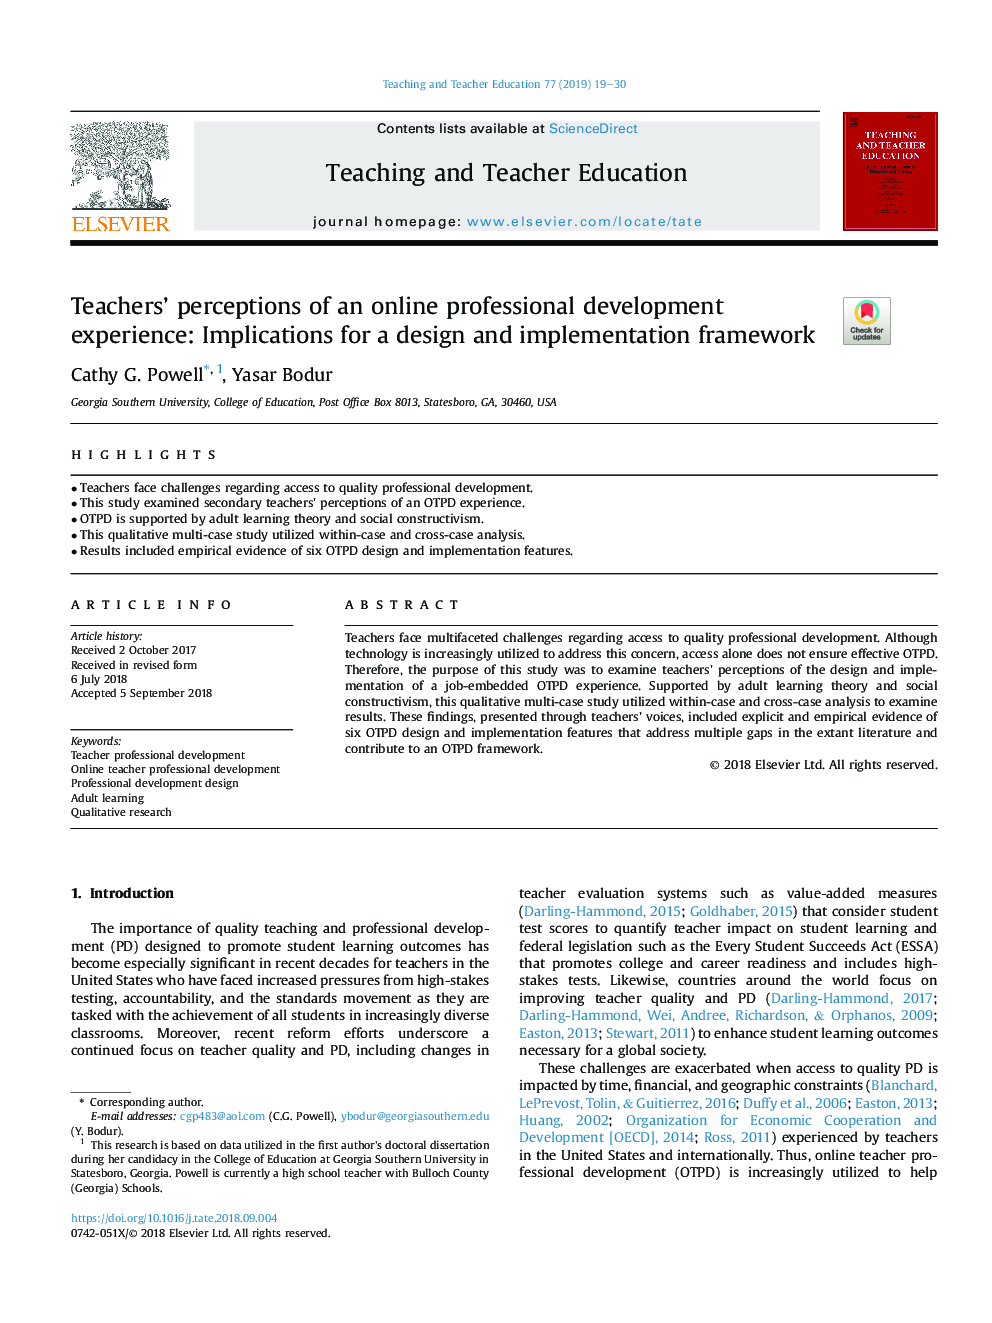 ادراک معلمان از تجارب حرفه ای توسعه حرفه ای: پیامدهایی برای چارچوب طراحی و پیاده سازی